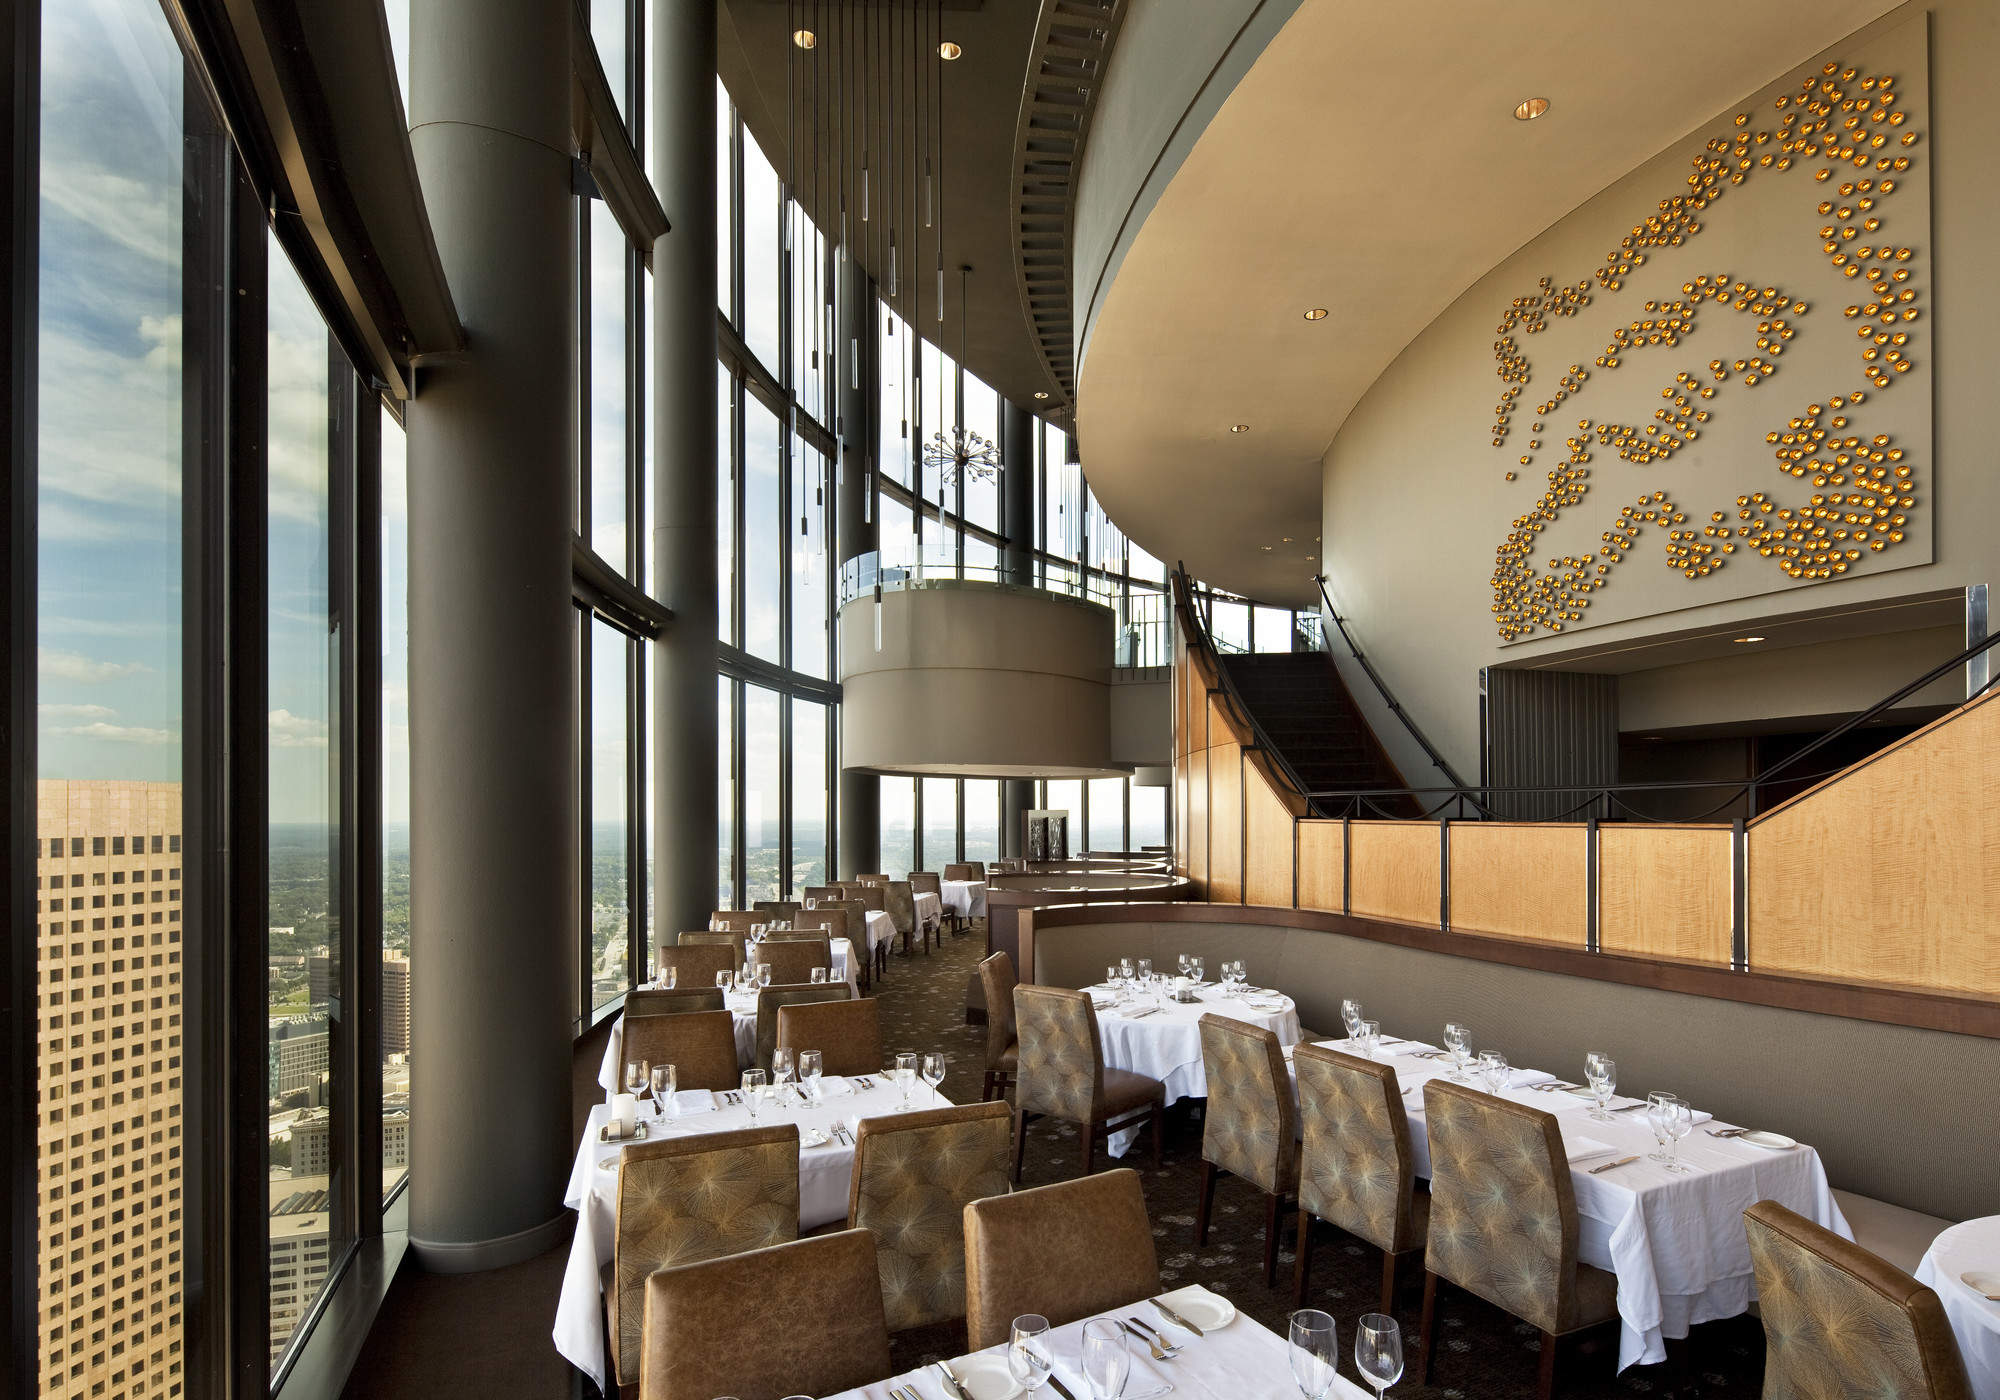 12 Best Restaurants To Take a Date In Atlanta (2022) GAFollowers